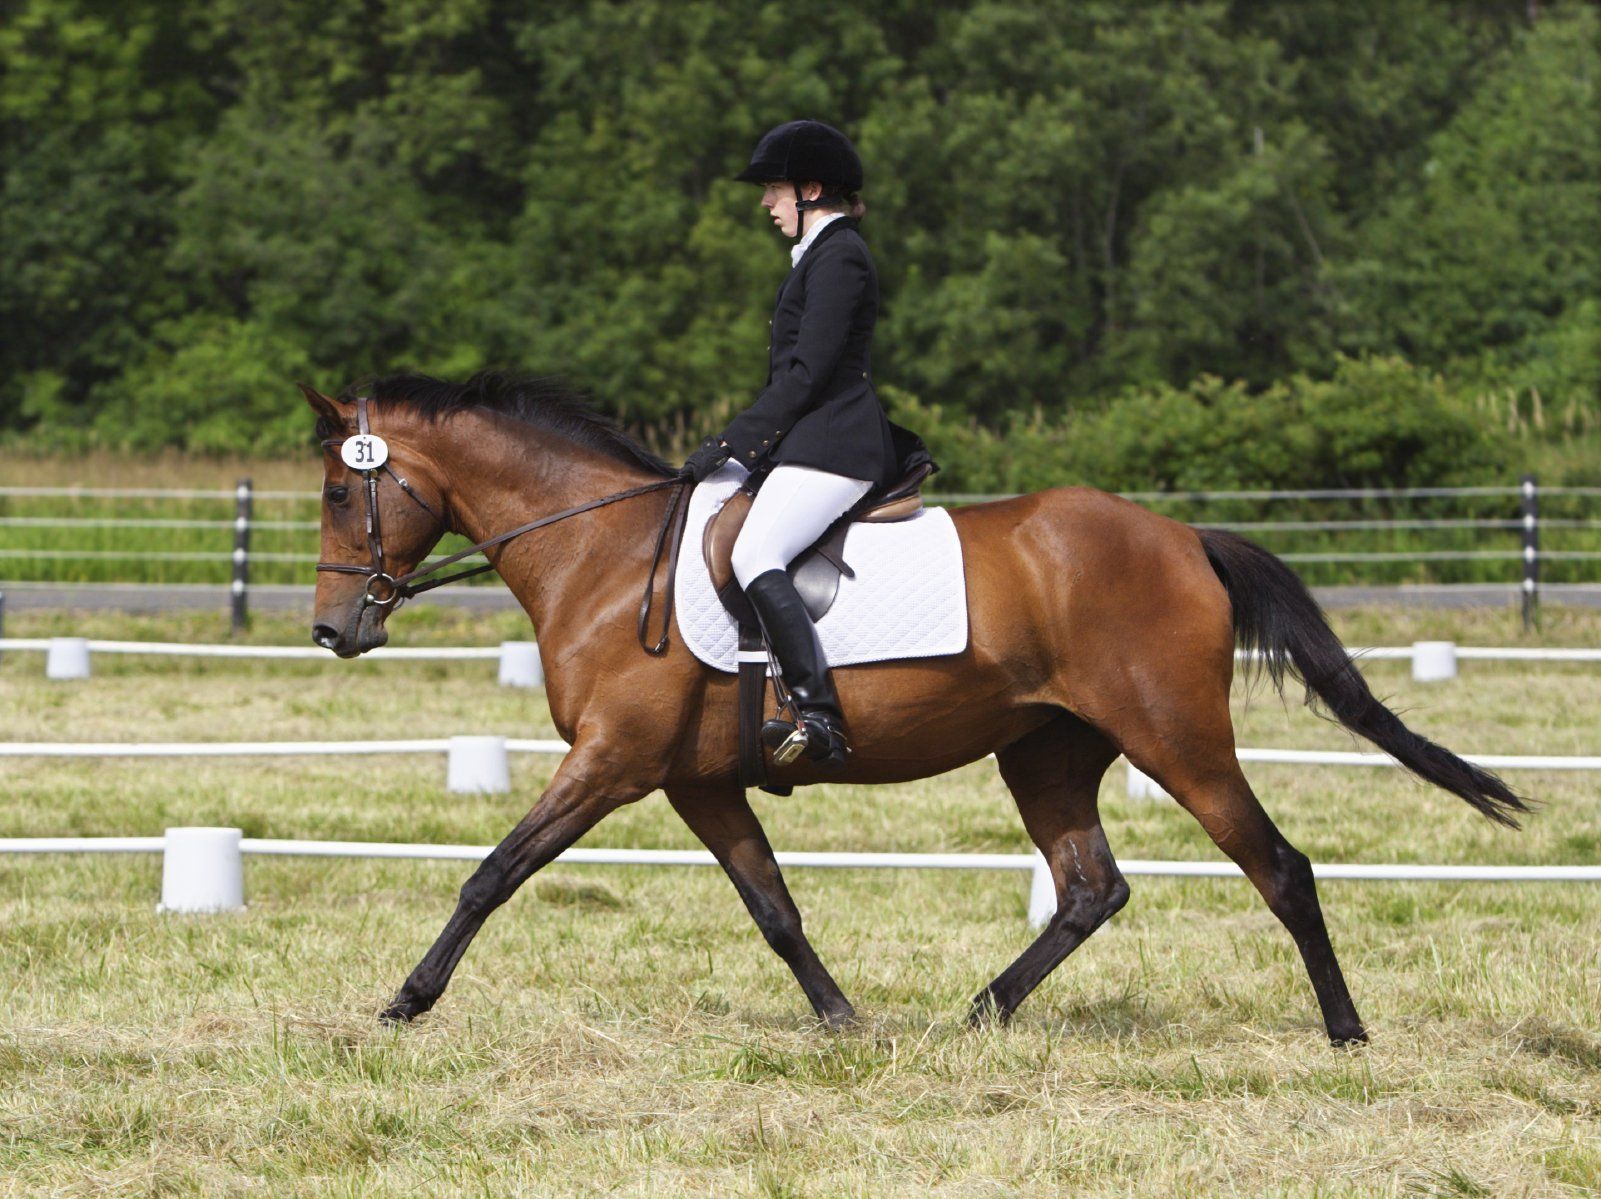  APM am Pferd: Eine therapeutische Maßnahme zur Verbesserung der Lauf- und Trabfähigkeit deines Tieres.